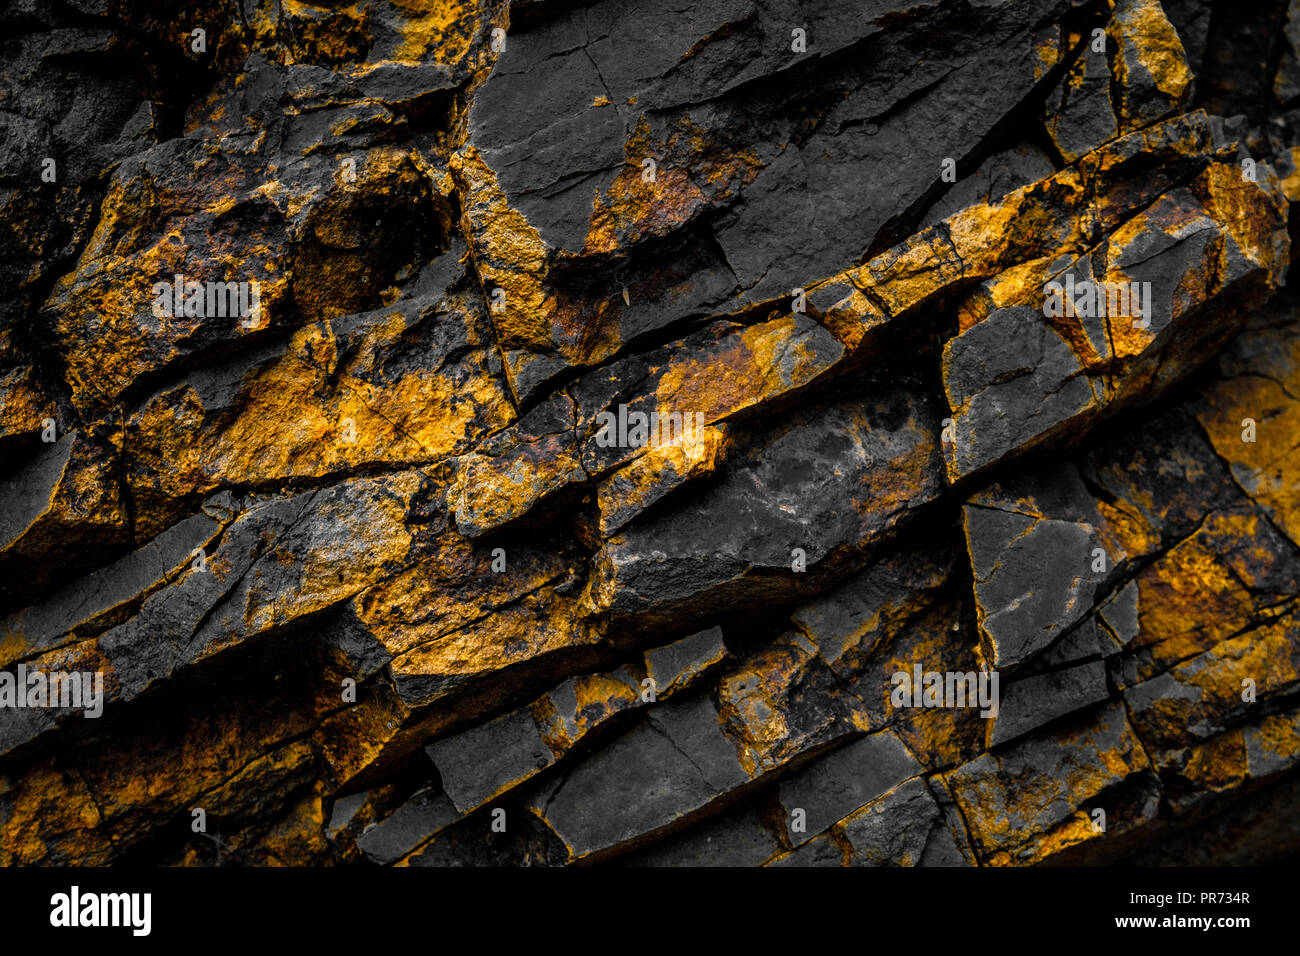 Rock noir avec fond de couleur jaune / or rocks - Banque D'Images